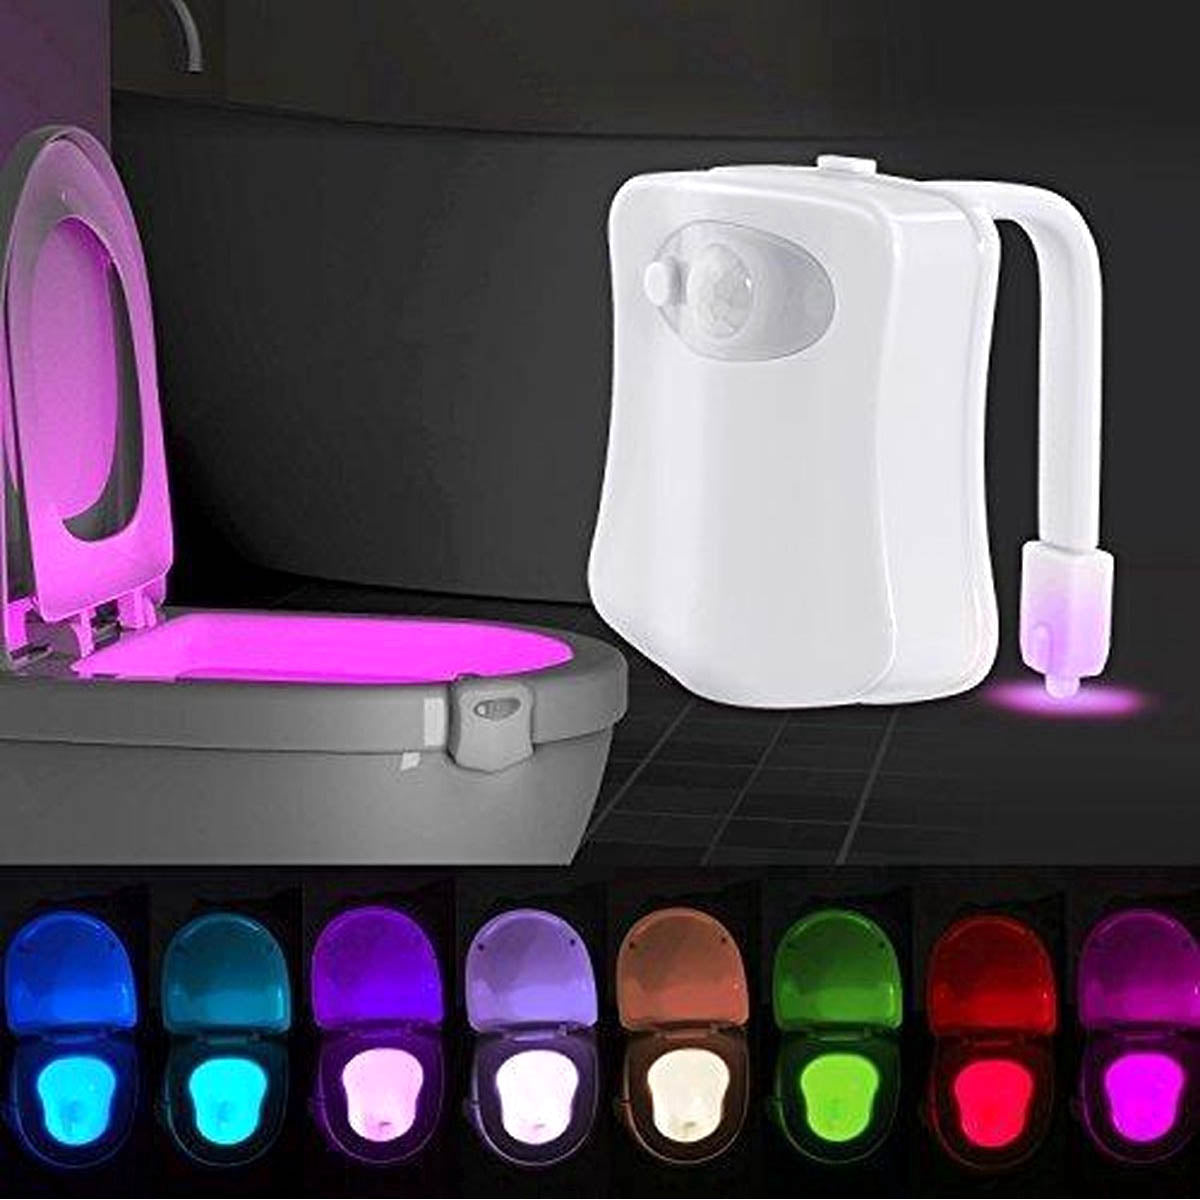 Ariko Toilet LED Verlichting - 8 Kleuren - Bewegingssensor - Batterij Besparend - Diverse kleuren licht - Incl Batterijen